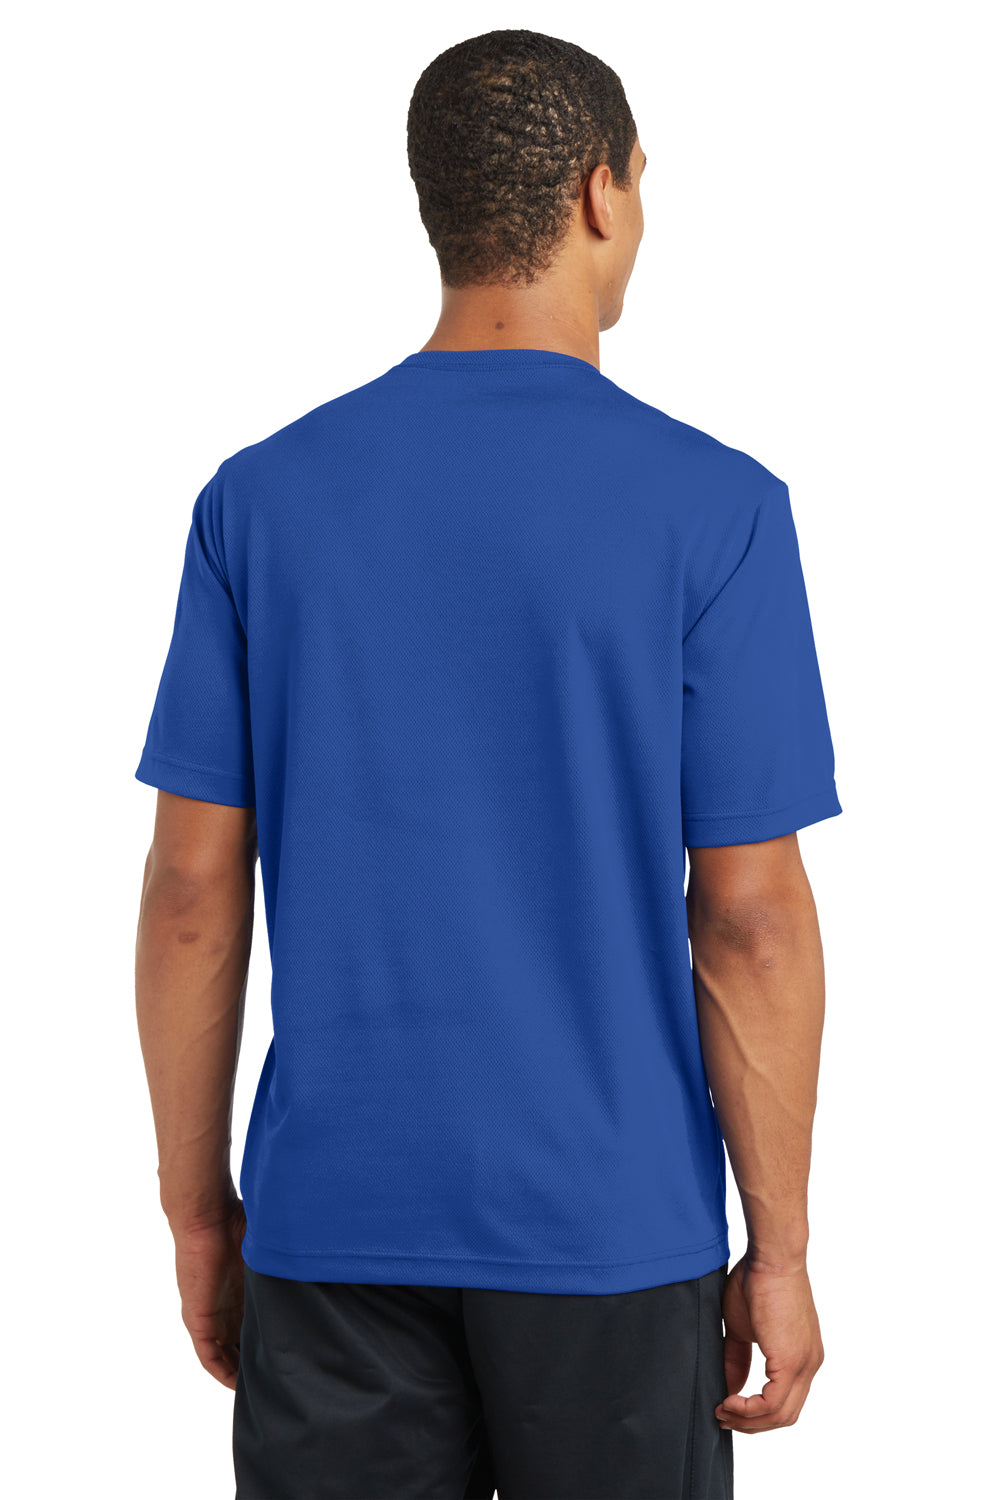 Sport-Tek ST340 Mens RacerMesh Moisture Wicking Short Sleeve Crewneck T-Shirt Royal Blue Back